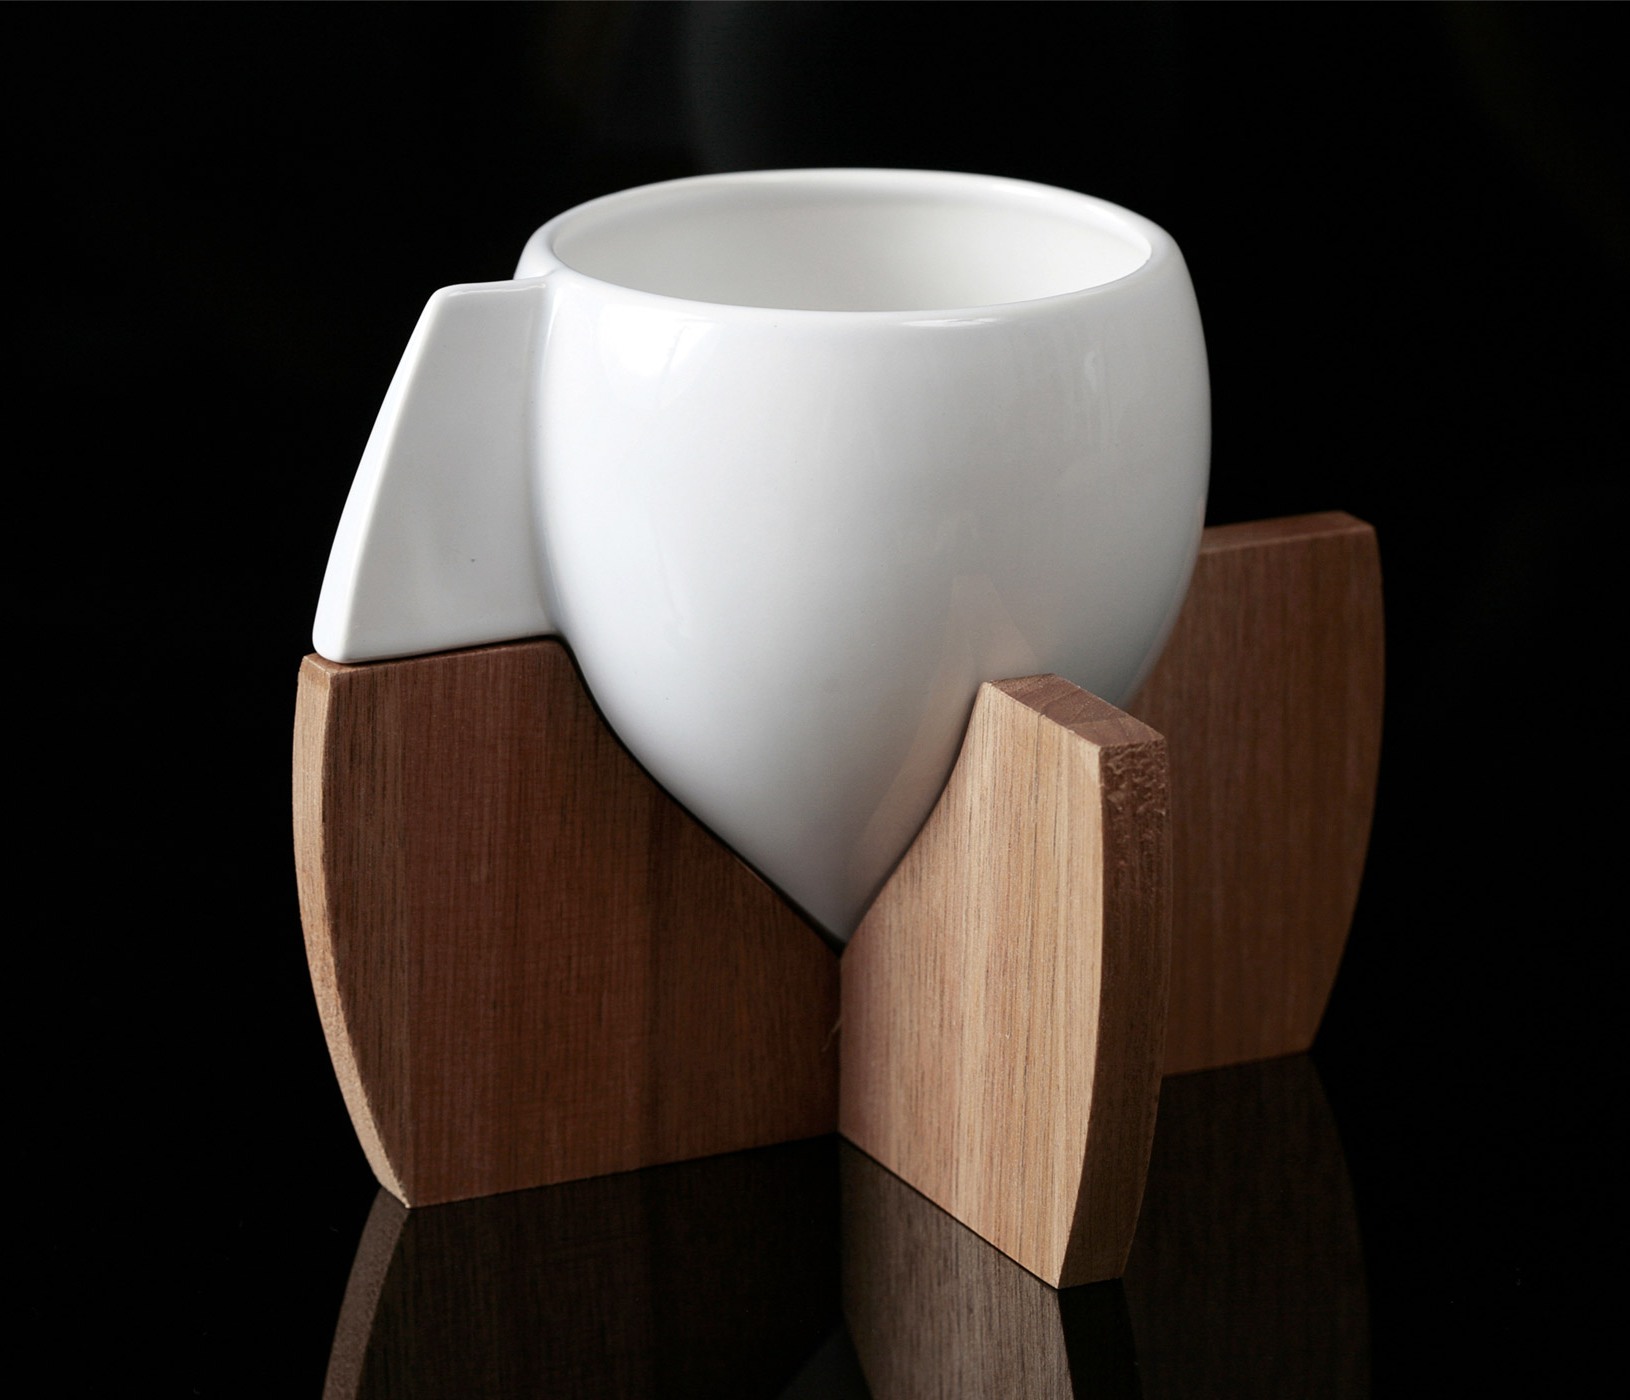 Skase teacup set by Steve Watson